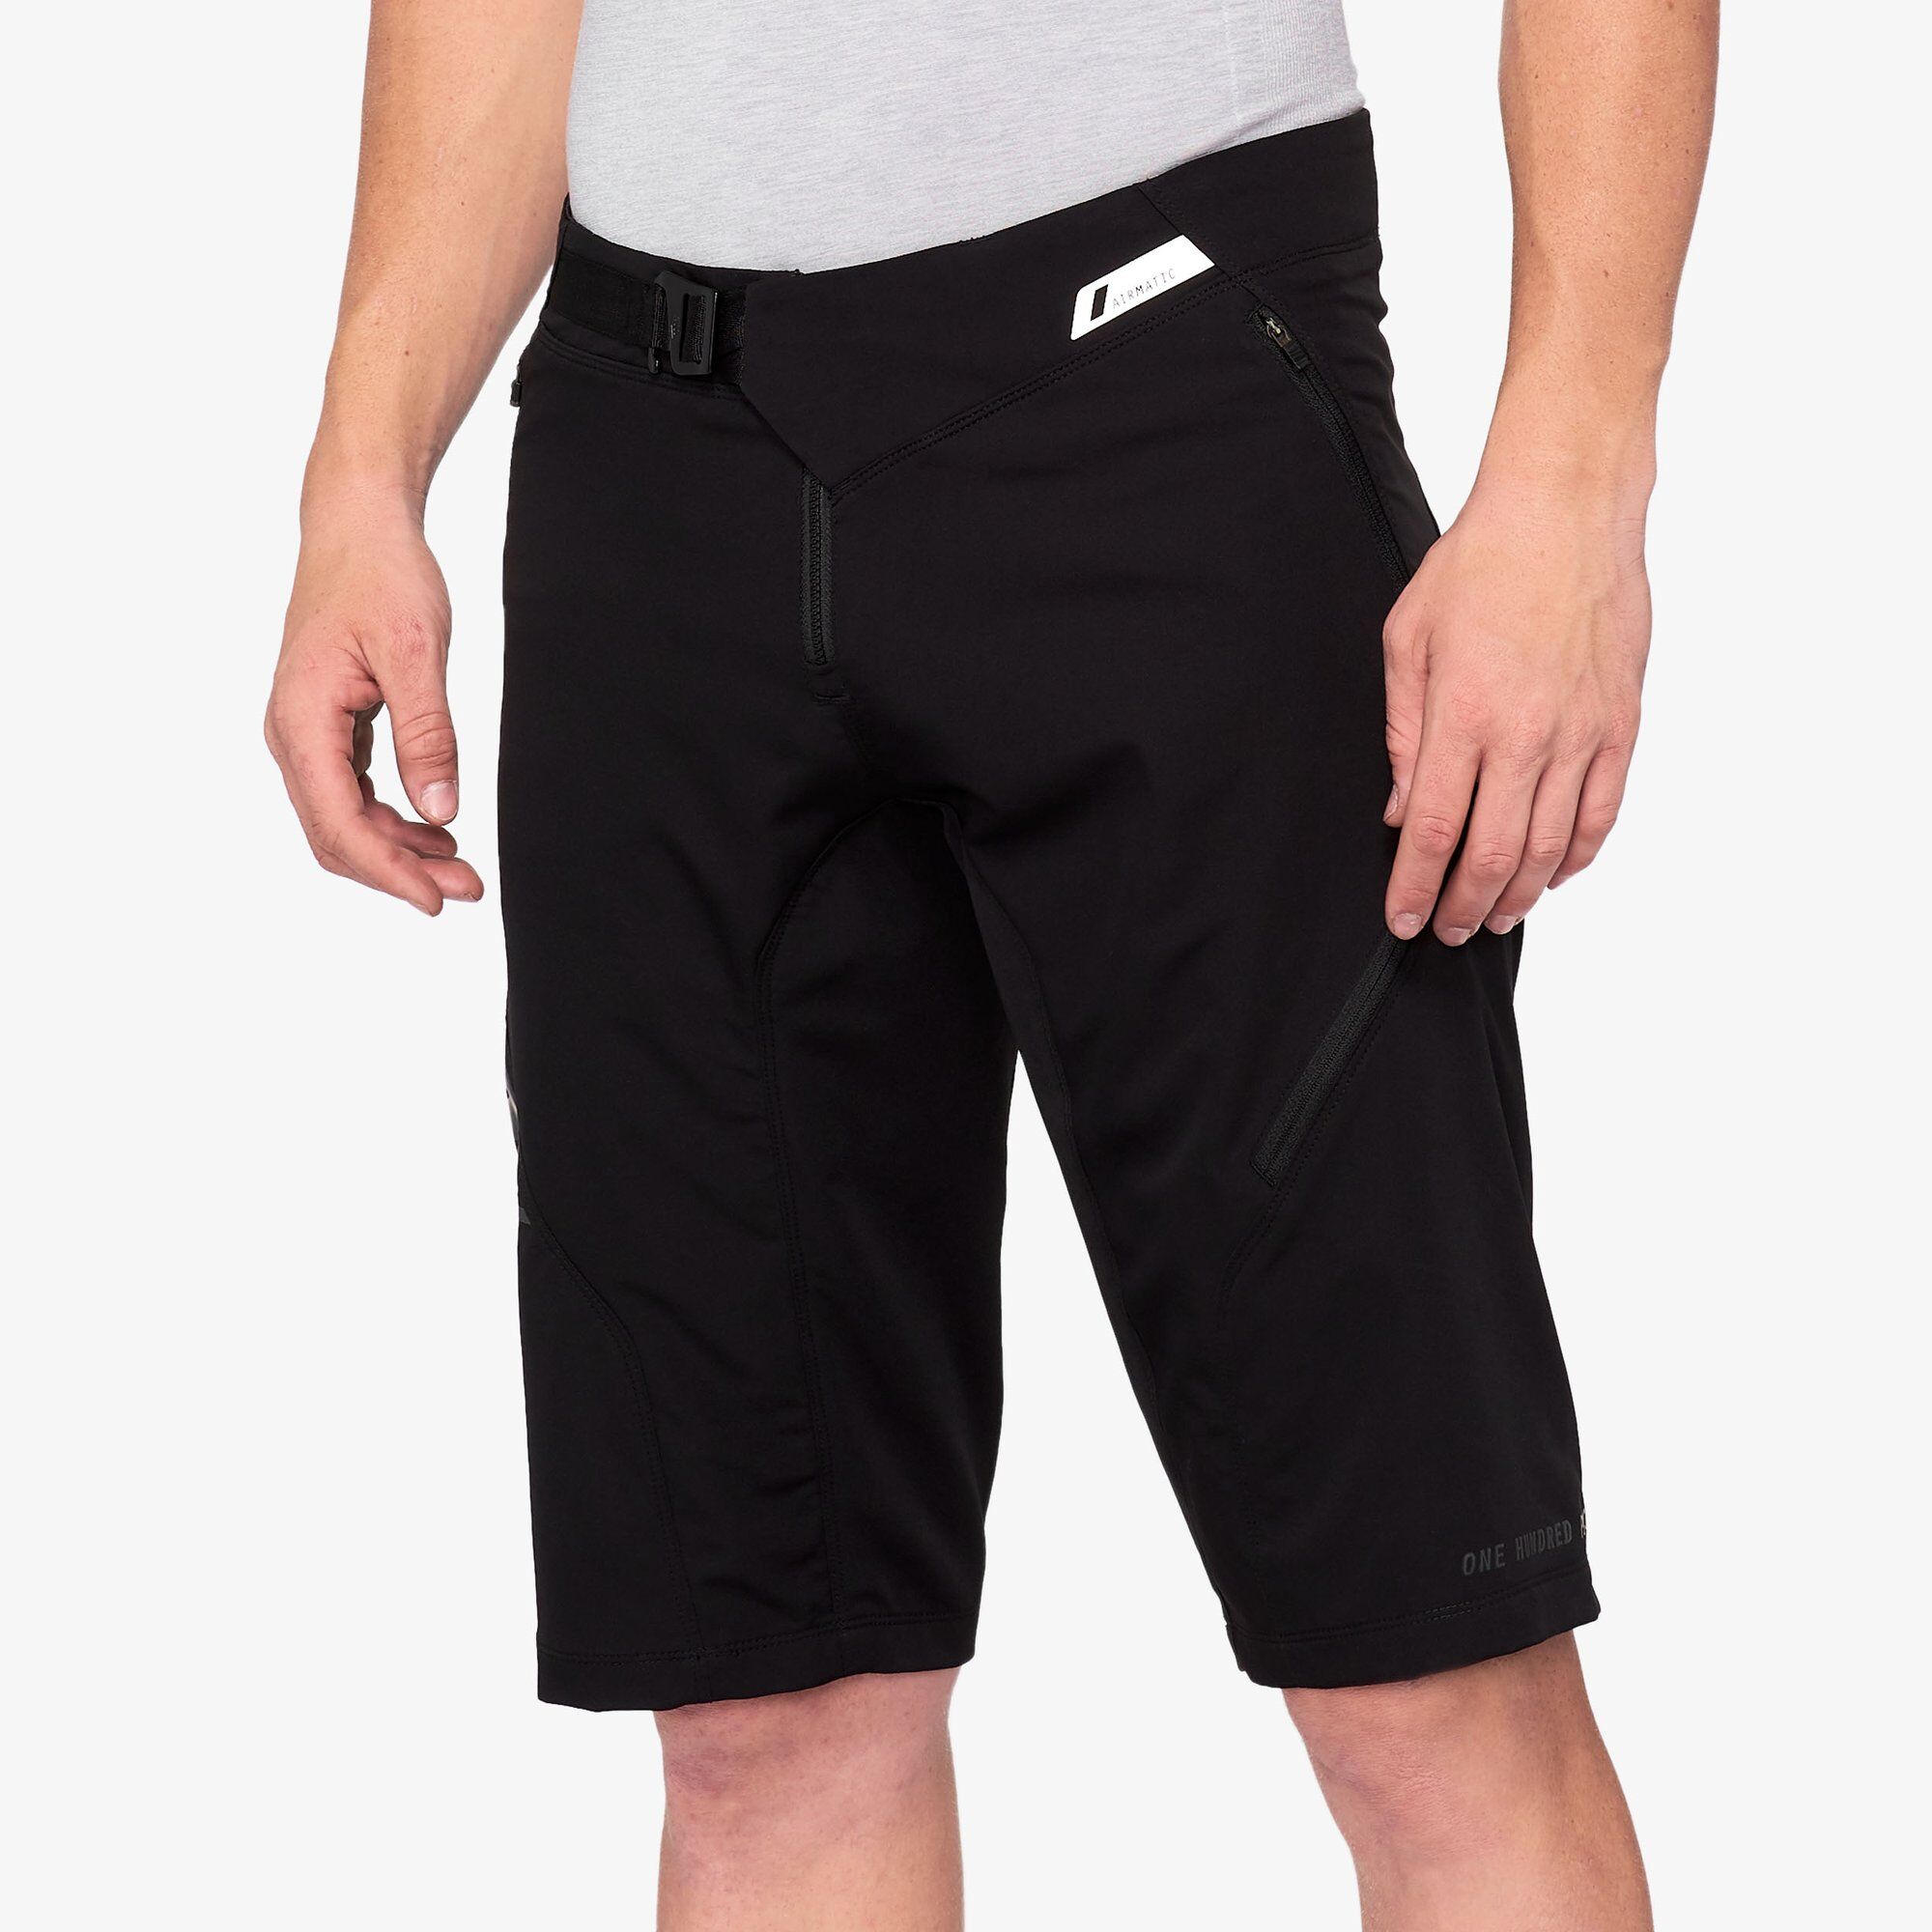 100% Airmatic - Pantalones cortos MTB - Hombre